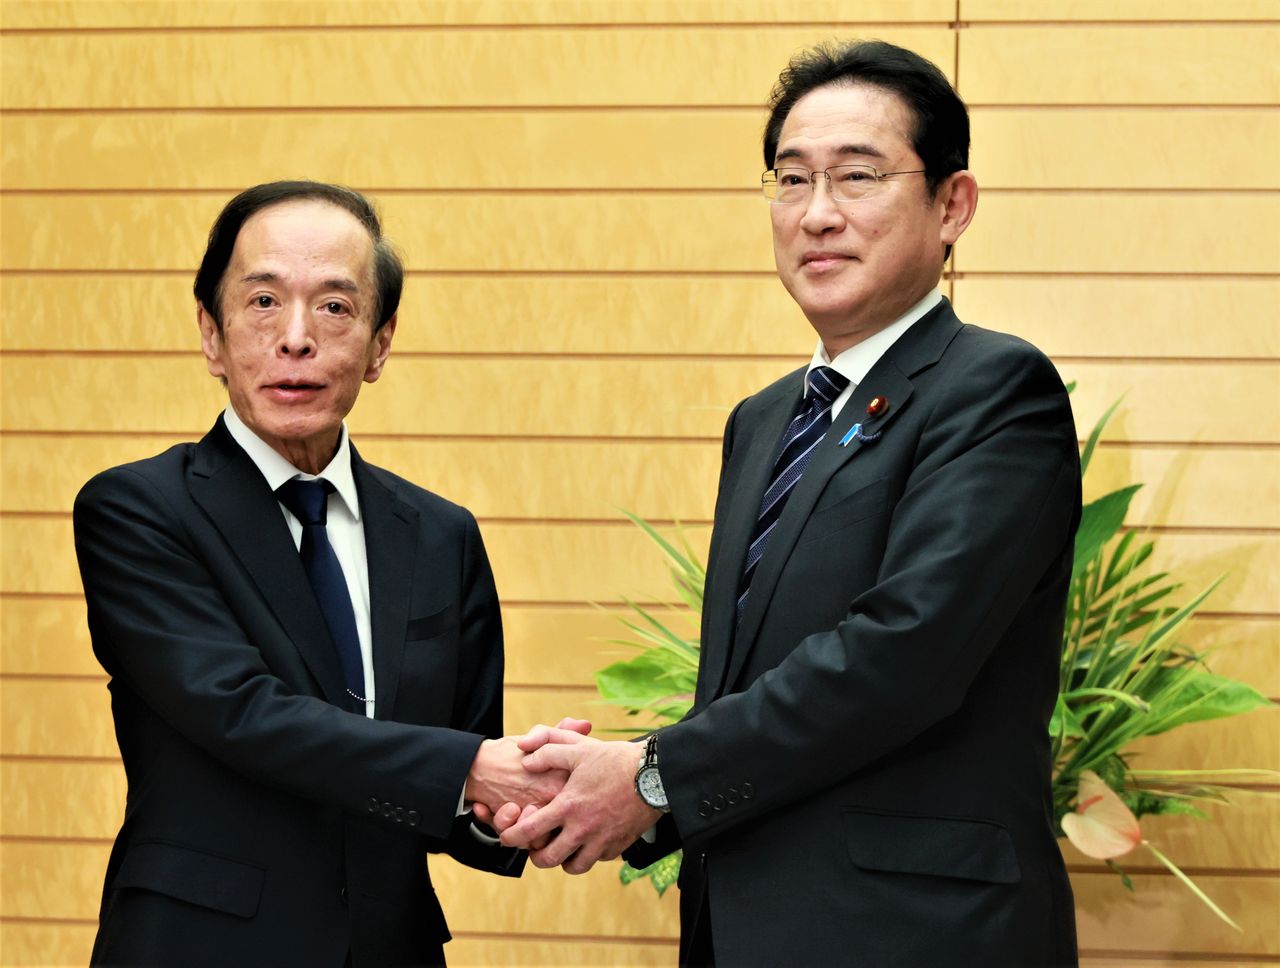  أويدا كازؤ (إلى اليسار) يصافح رئيس الوزراء كيشيدا فوميئو بعد تعيينه محافظًاً لبنك اليابان. (© جيجي برس)